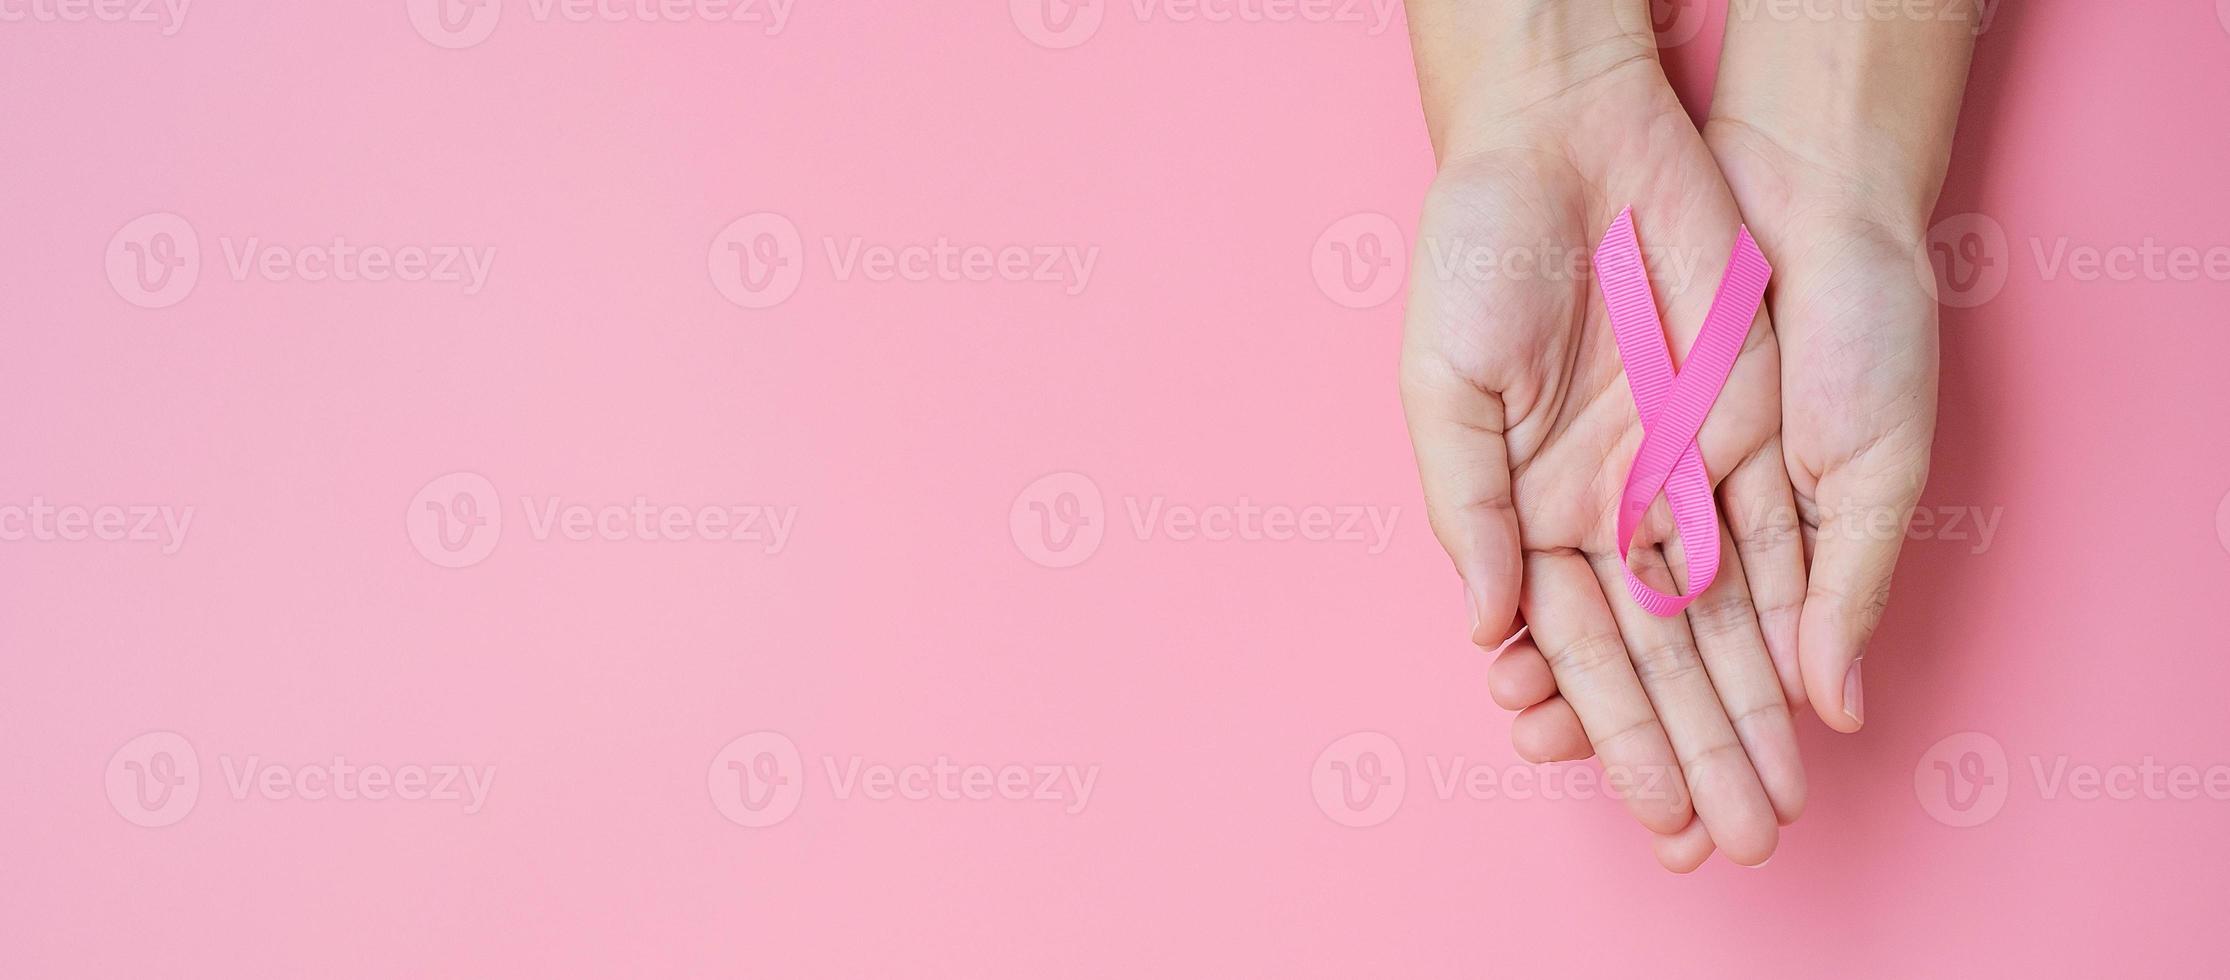 oktober borstkanker bewustzijn maand, volwassen vrouw hand met roze lint op roze achtergrond voor het ondersteunen van mensen die leven en ziekte. internationaal vrouwen-, moeder- en wereldkankerdagconcept foto